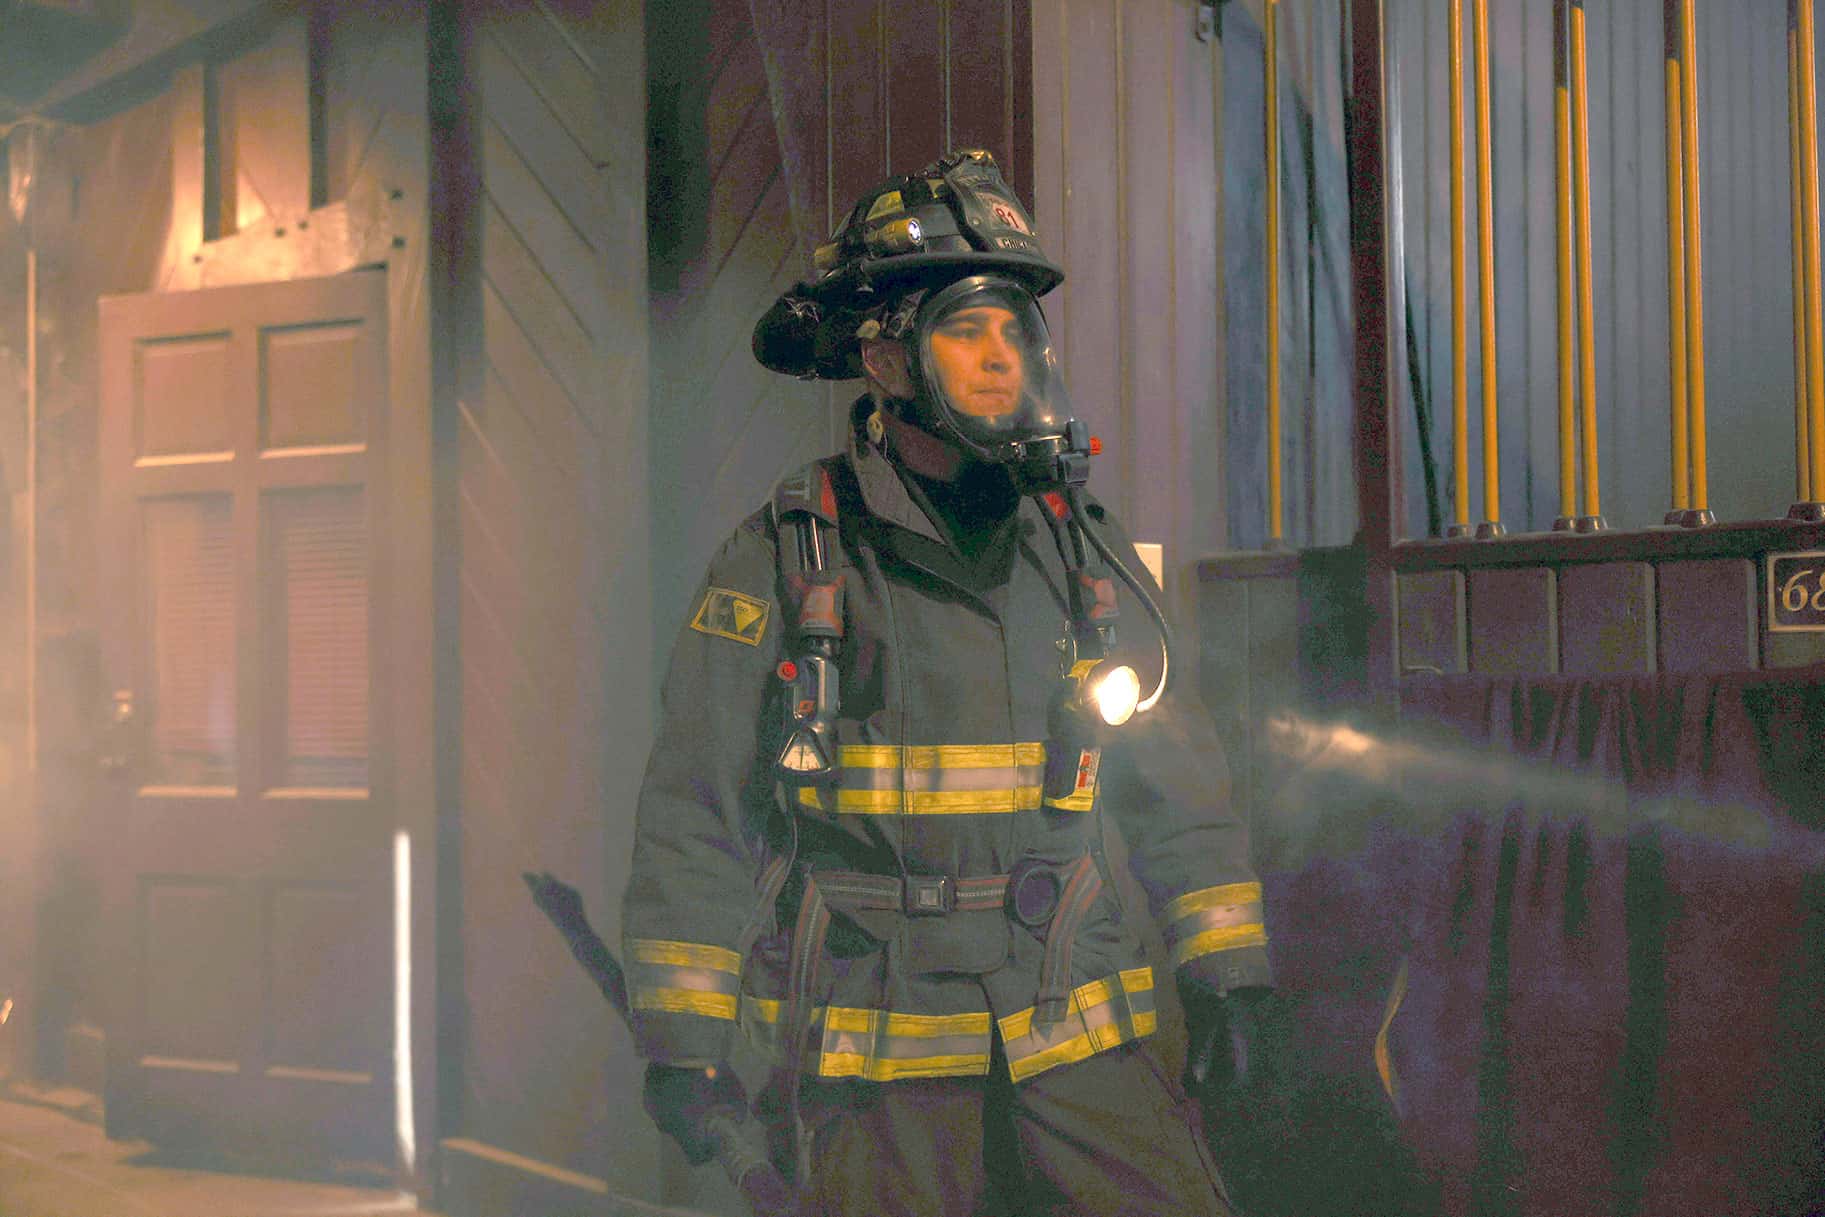 LA Fire and Rescue Episode 1 Release Date